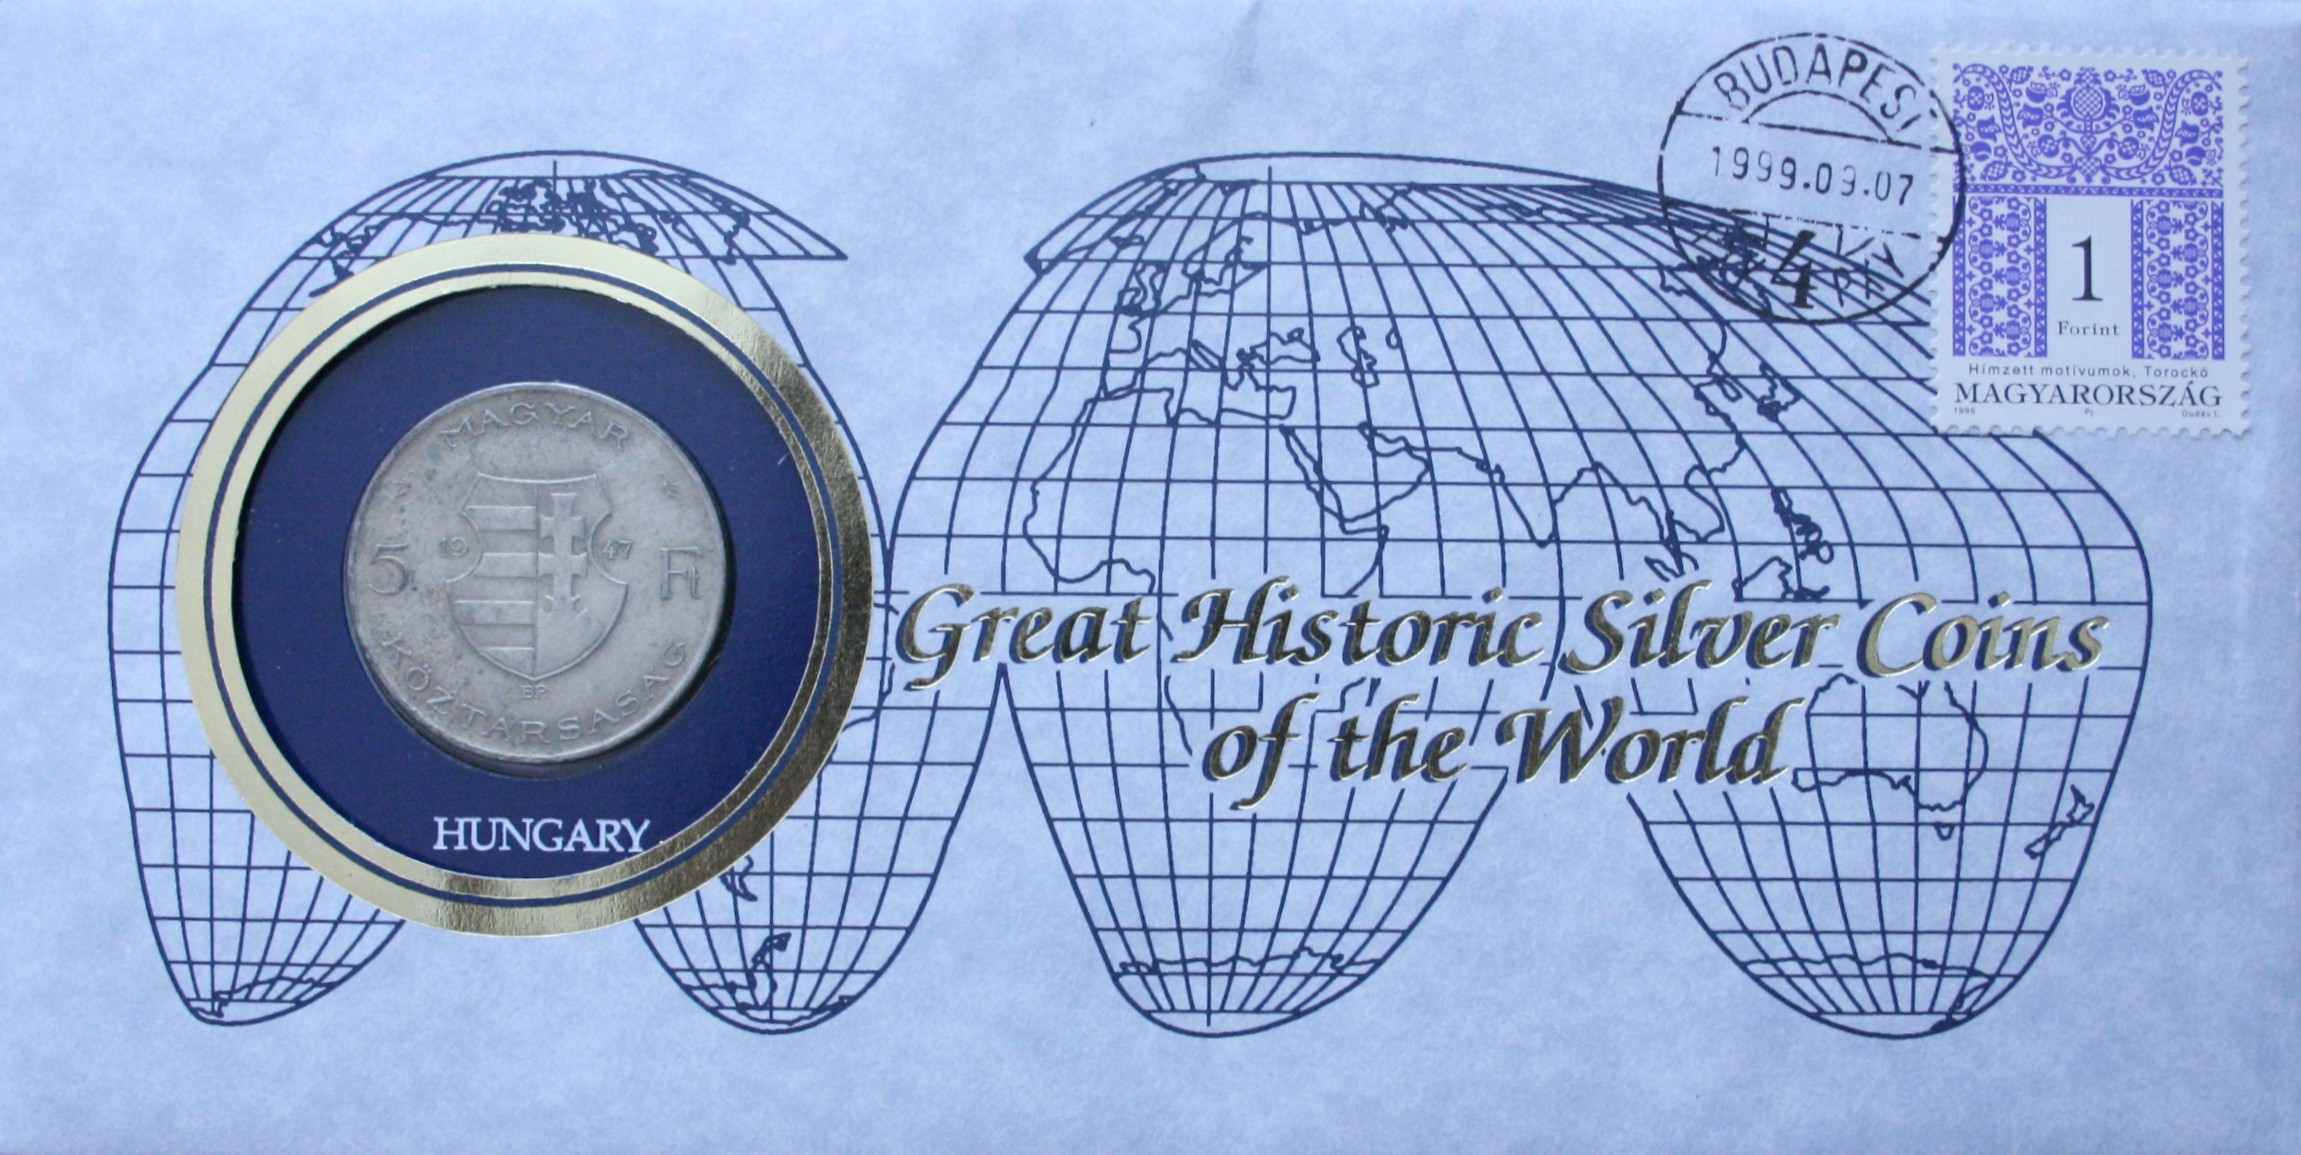 http://www.ermeskepeslap.hu/ermeskepeslapok/great_historic_silver_coins_of_the_world_5ft/www_ermeskepeslap_hu_5ft_great_historic_silver_coins_of_the_world_pxy4pxy_1ft_nagy.jpg